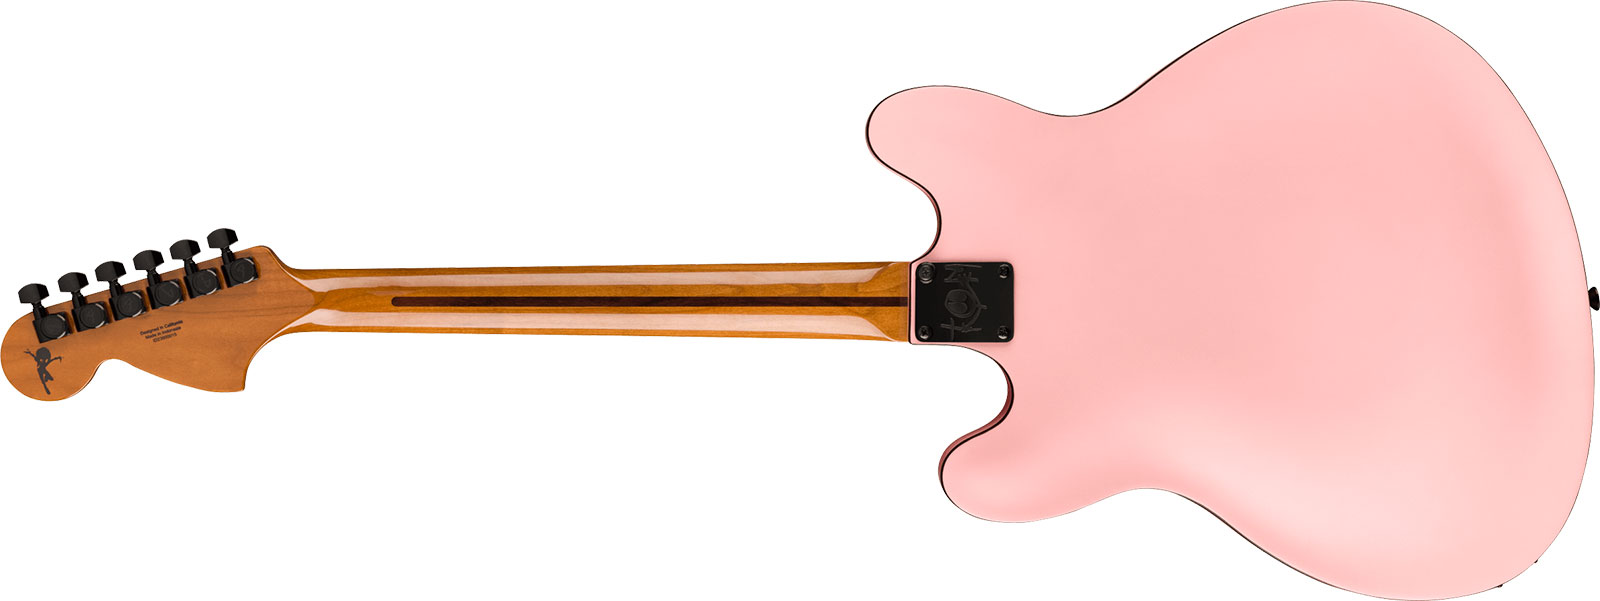 Fender Tom Delonge Starcaster Signature 1h Seymour Duncan Ht Rw - Satin Shell Pink - Guitare Électrique 1/2 Caisse - Variation 1